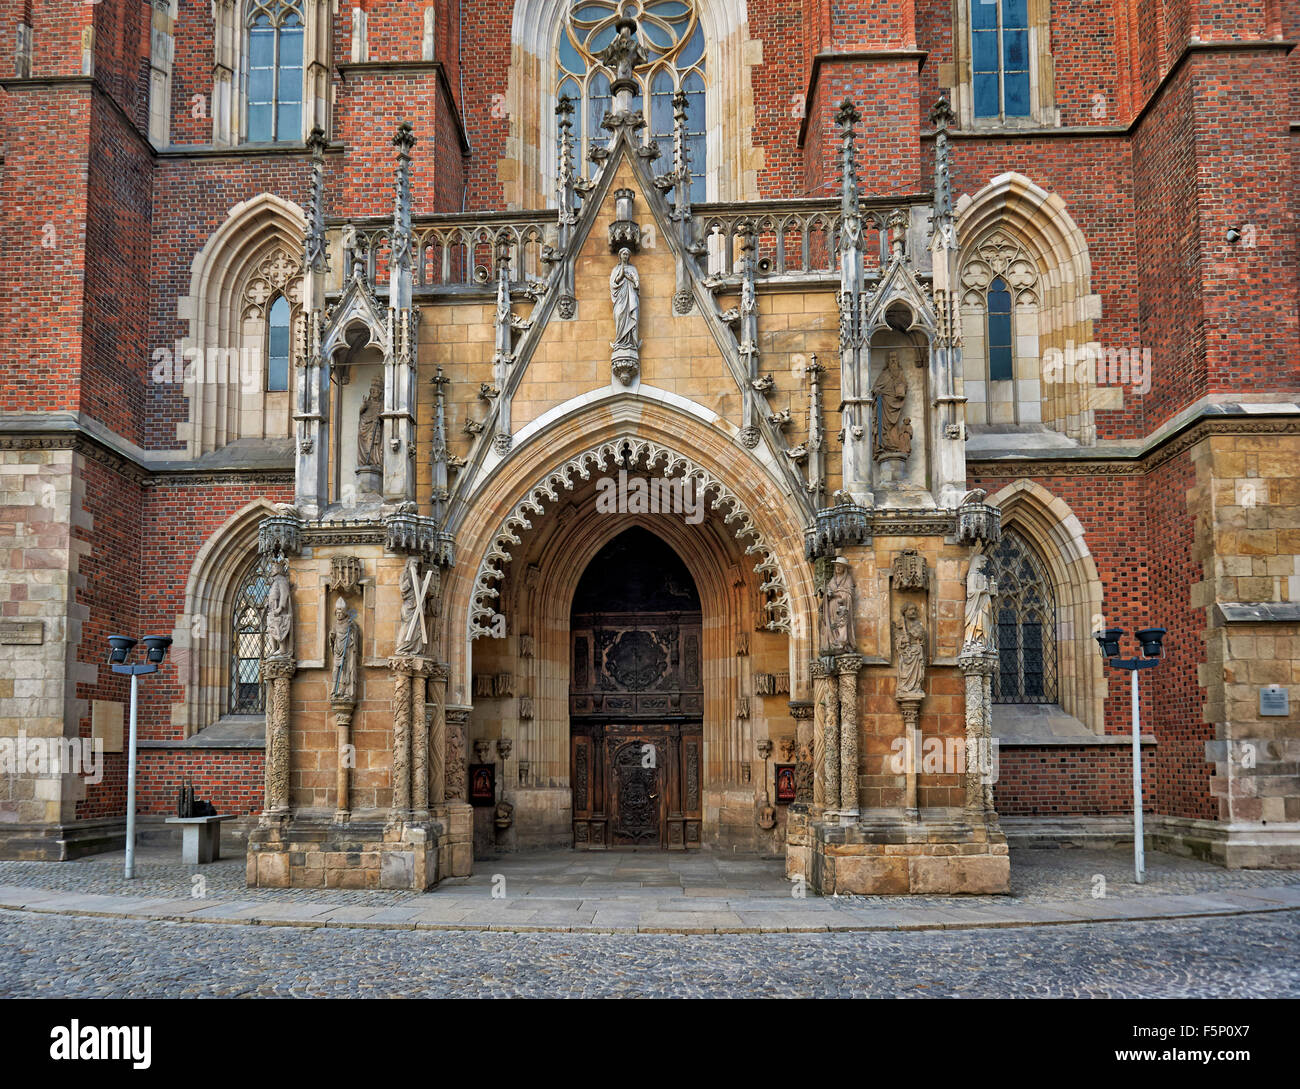 Portail de Cathédrale de Saint Jean Baptiste ou Cathédrale de Wroclaw, l'île de la cathédrale ou Ostrow Tumski, la Pologne, l'Europe Banque D'Images